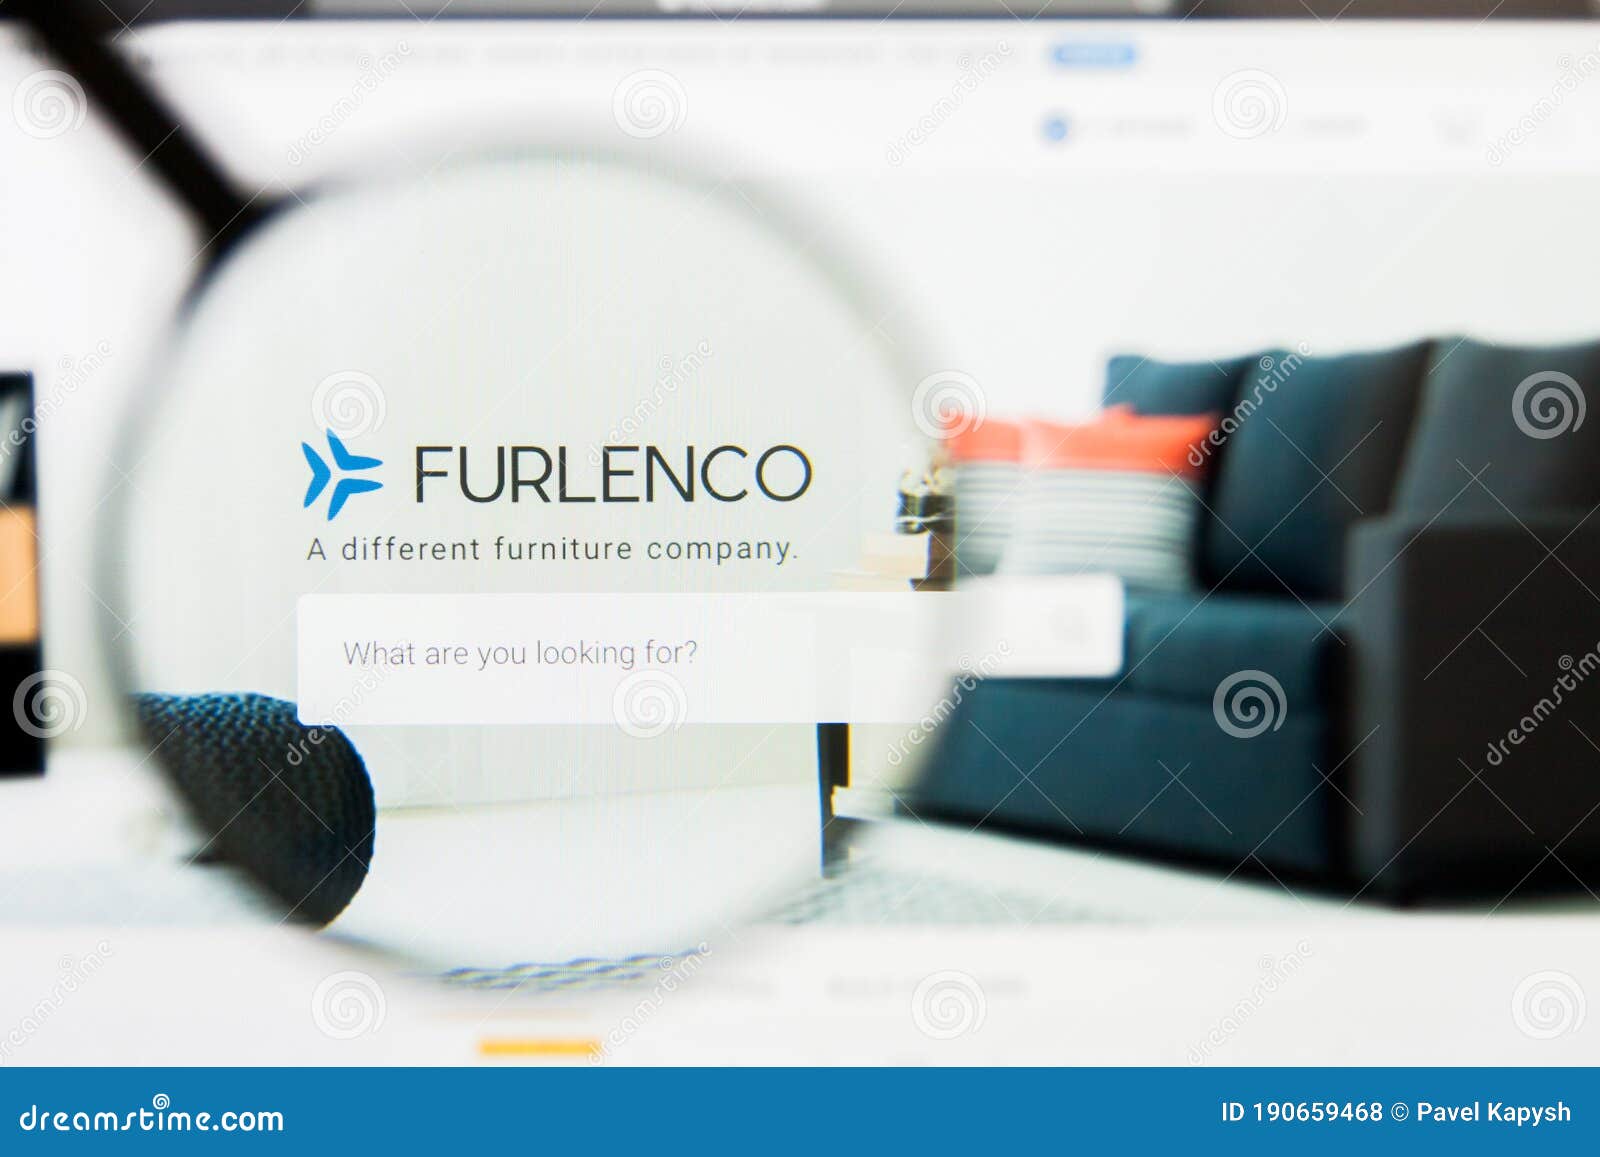 Furlenco Reviews | Read Customer Service Reviews of www.furlenco.com